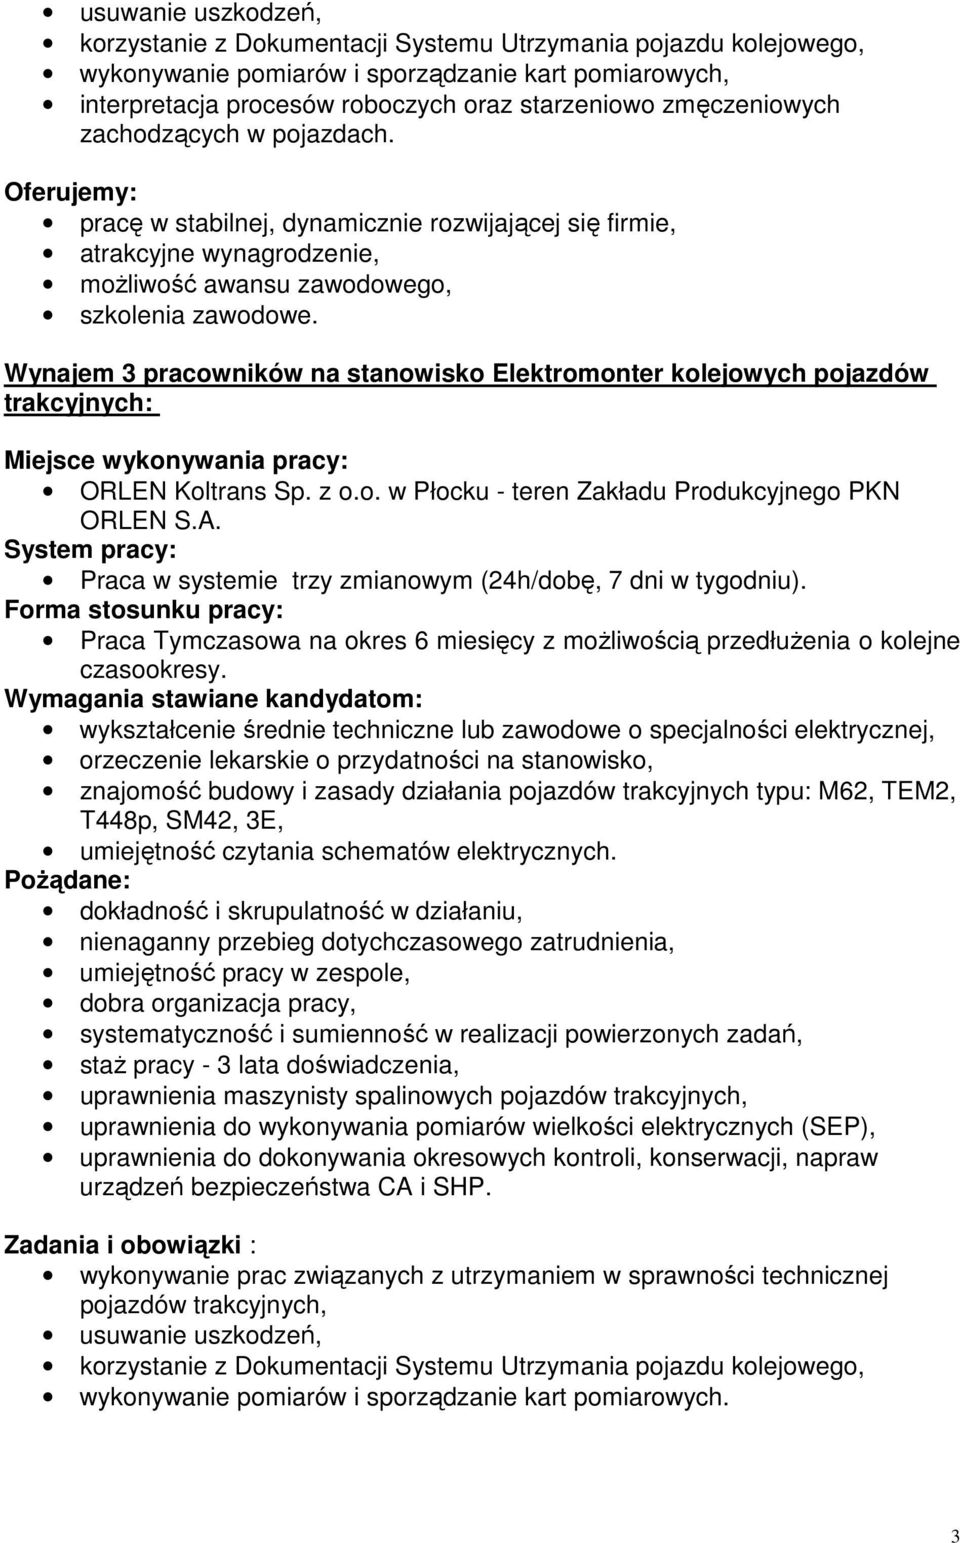 Wynajem 3 pracowników na stanowisko Elektromonter kolejowych pojazdów trakcyjnych: Miejsce wykonywania pracy: ORLEN Koltrans Sp. z o.o. w Płocku - teren Zakładu Produkcyjnego PKN ORLEN S.A.